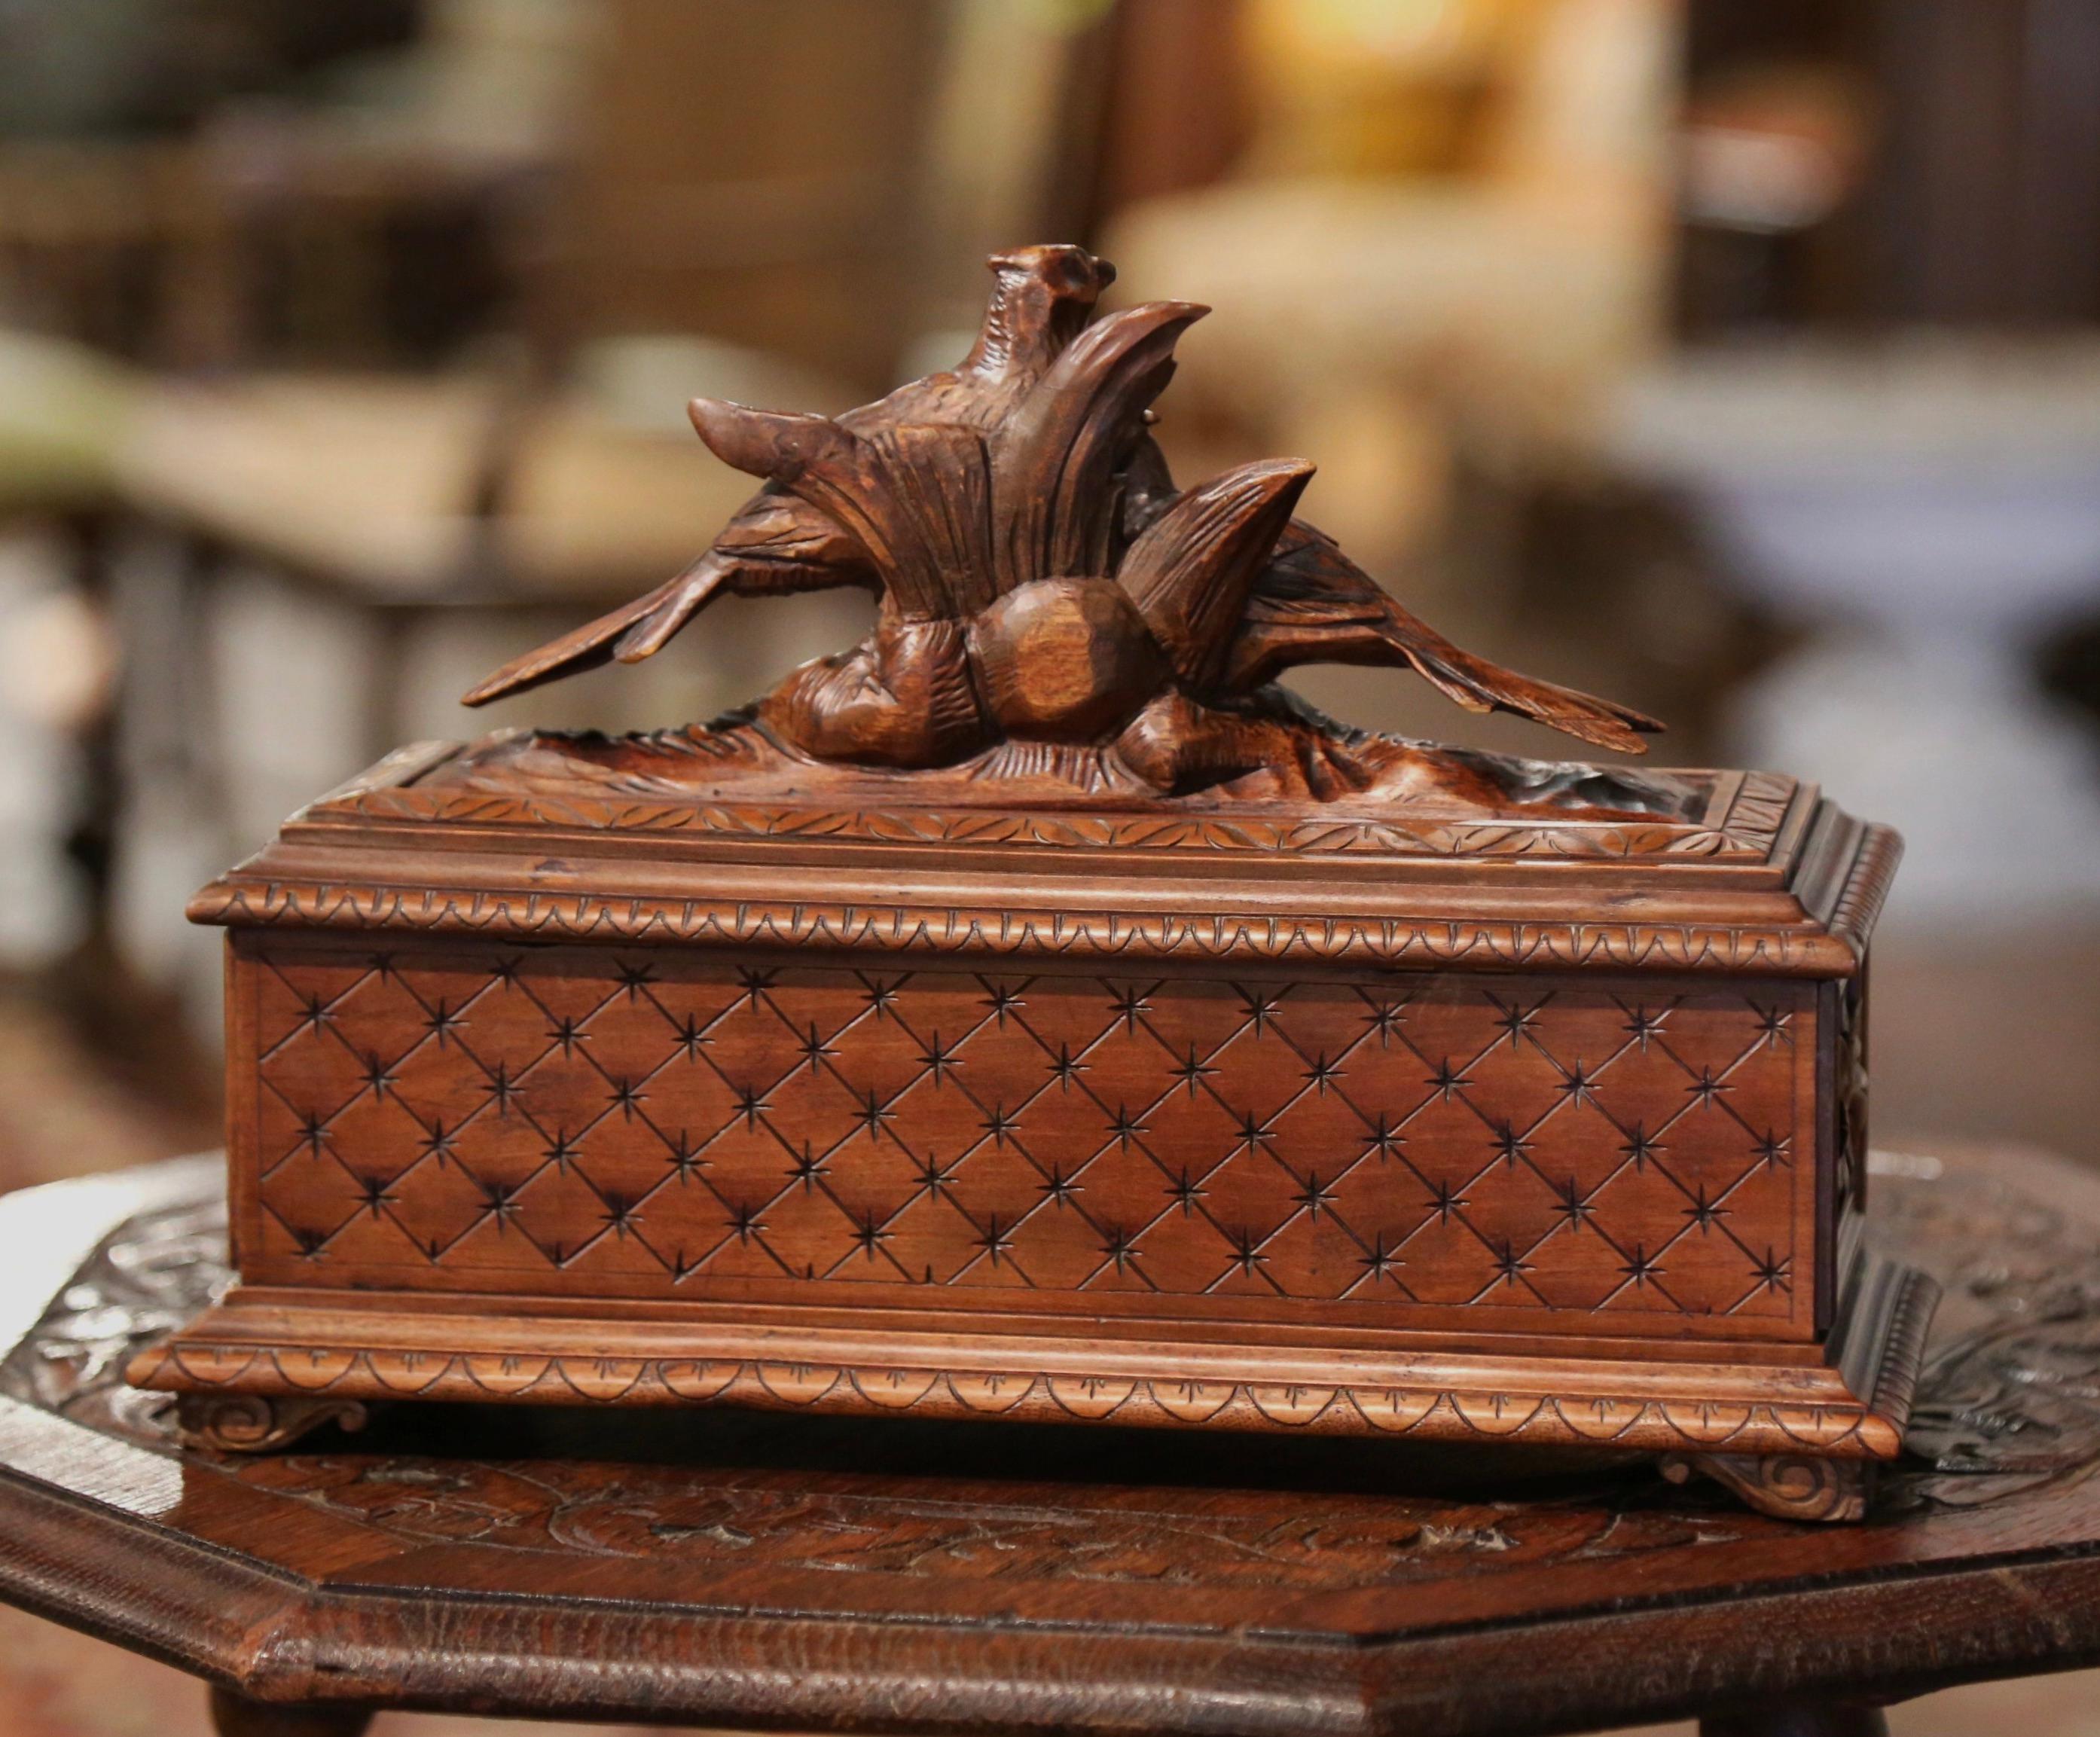 19th Century French Black Forest Carved Walnut Jewelry Box with Bird Motifs 3